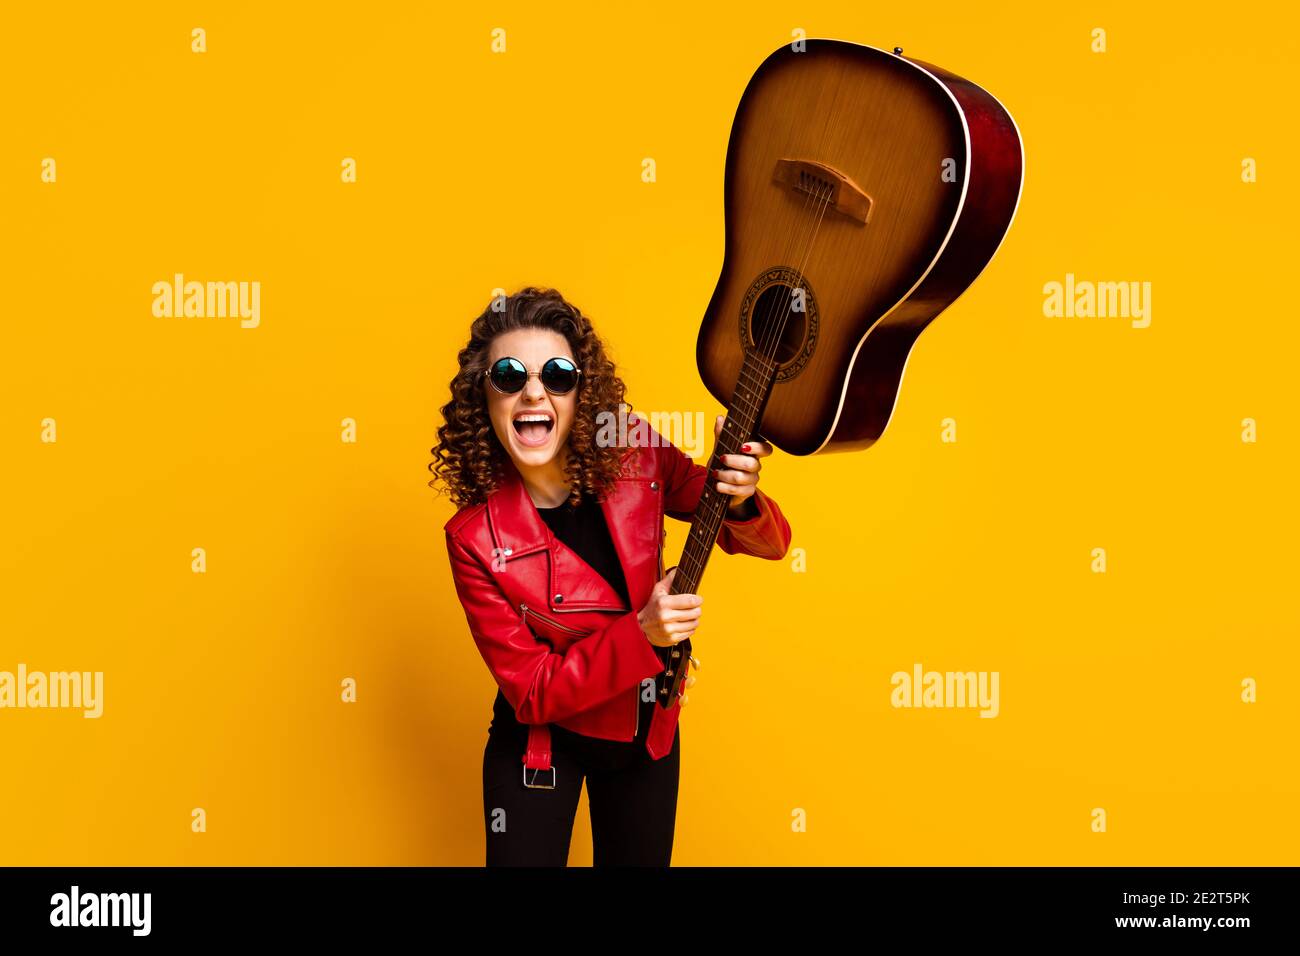 Portrait de fou fou gai gai-cheveux de fille guitariste musicien combat  avec guitare ayant plaisir isolé sur fond jaune vif Photo Stock - Alamy